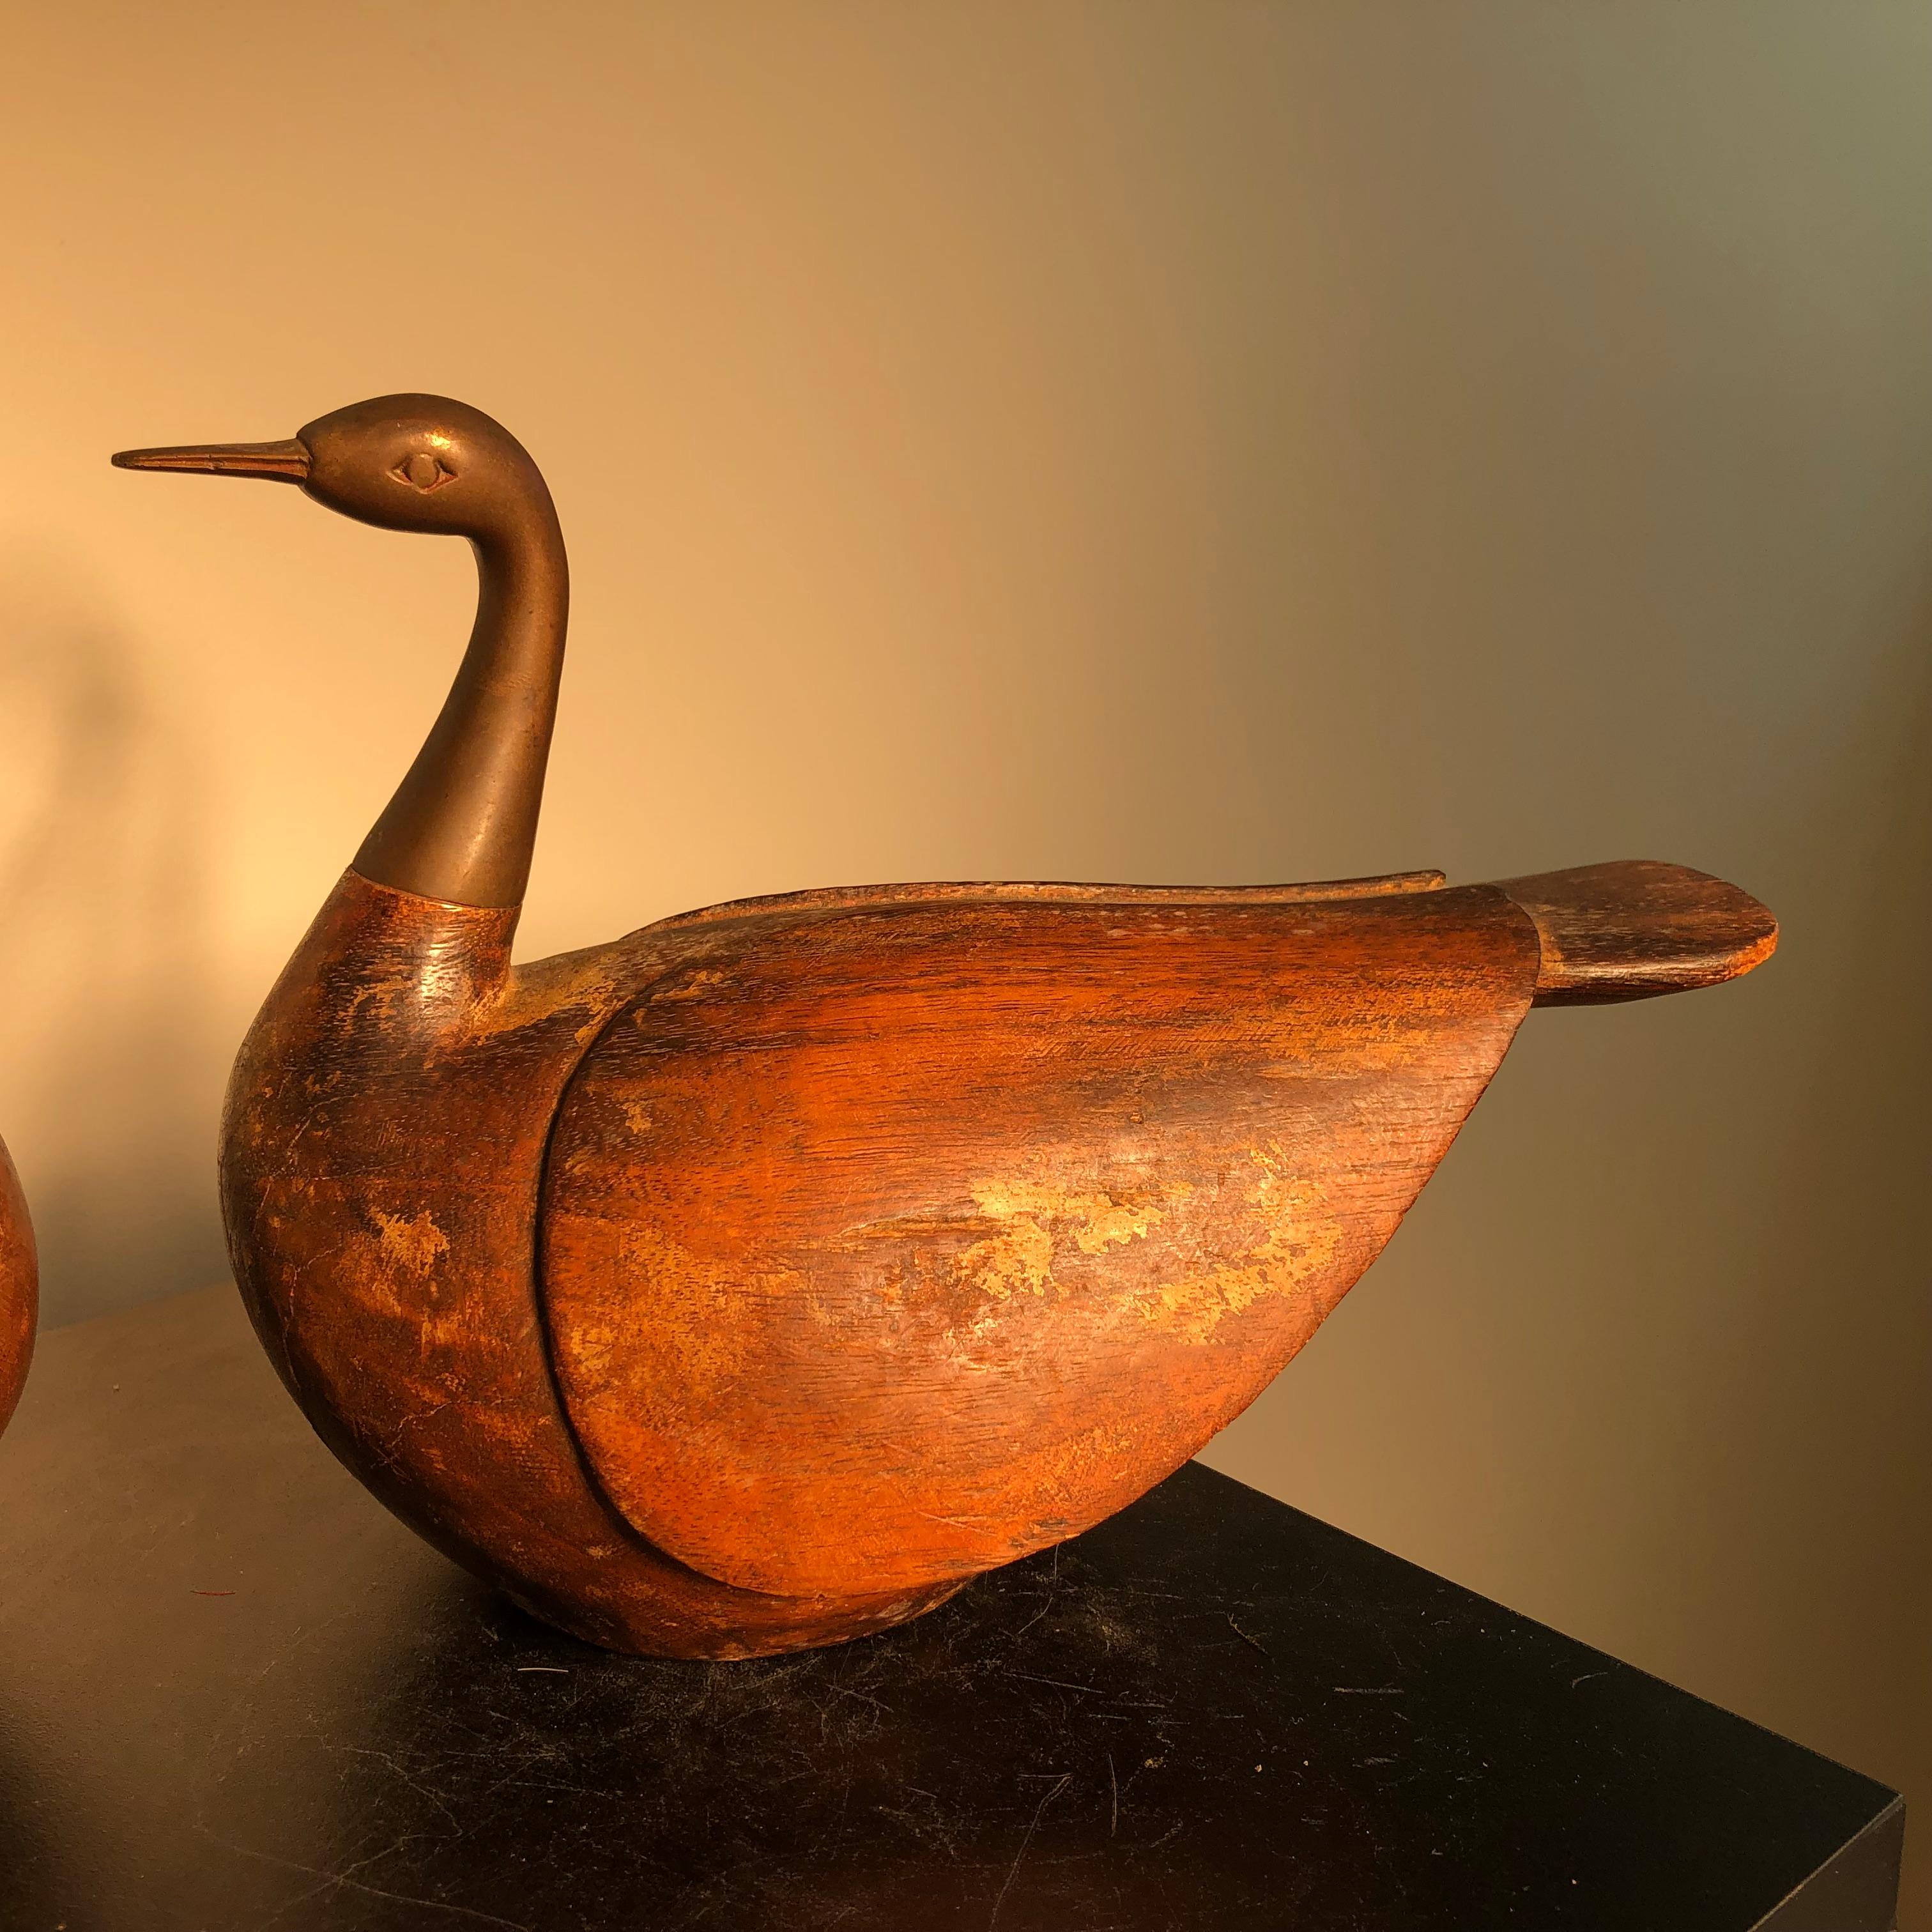 Korean Antique Pair Mandarin Wedding Ducks, Hand Carved with Fine Details